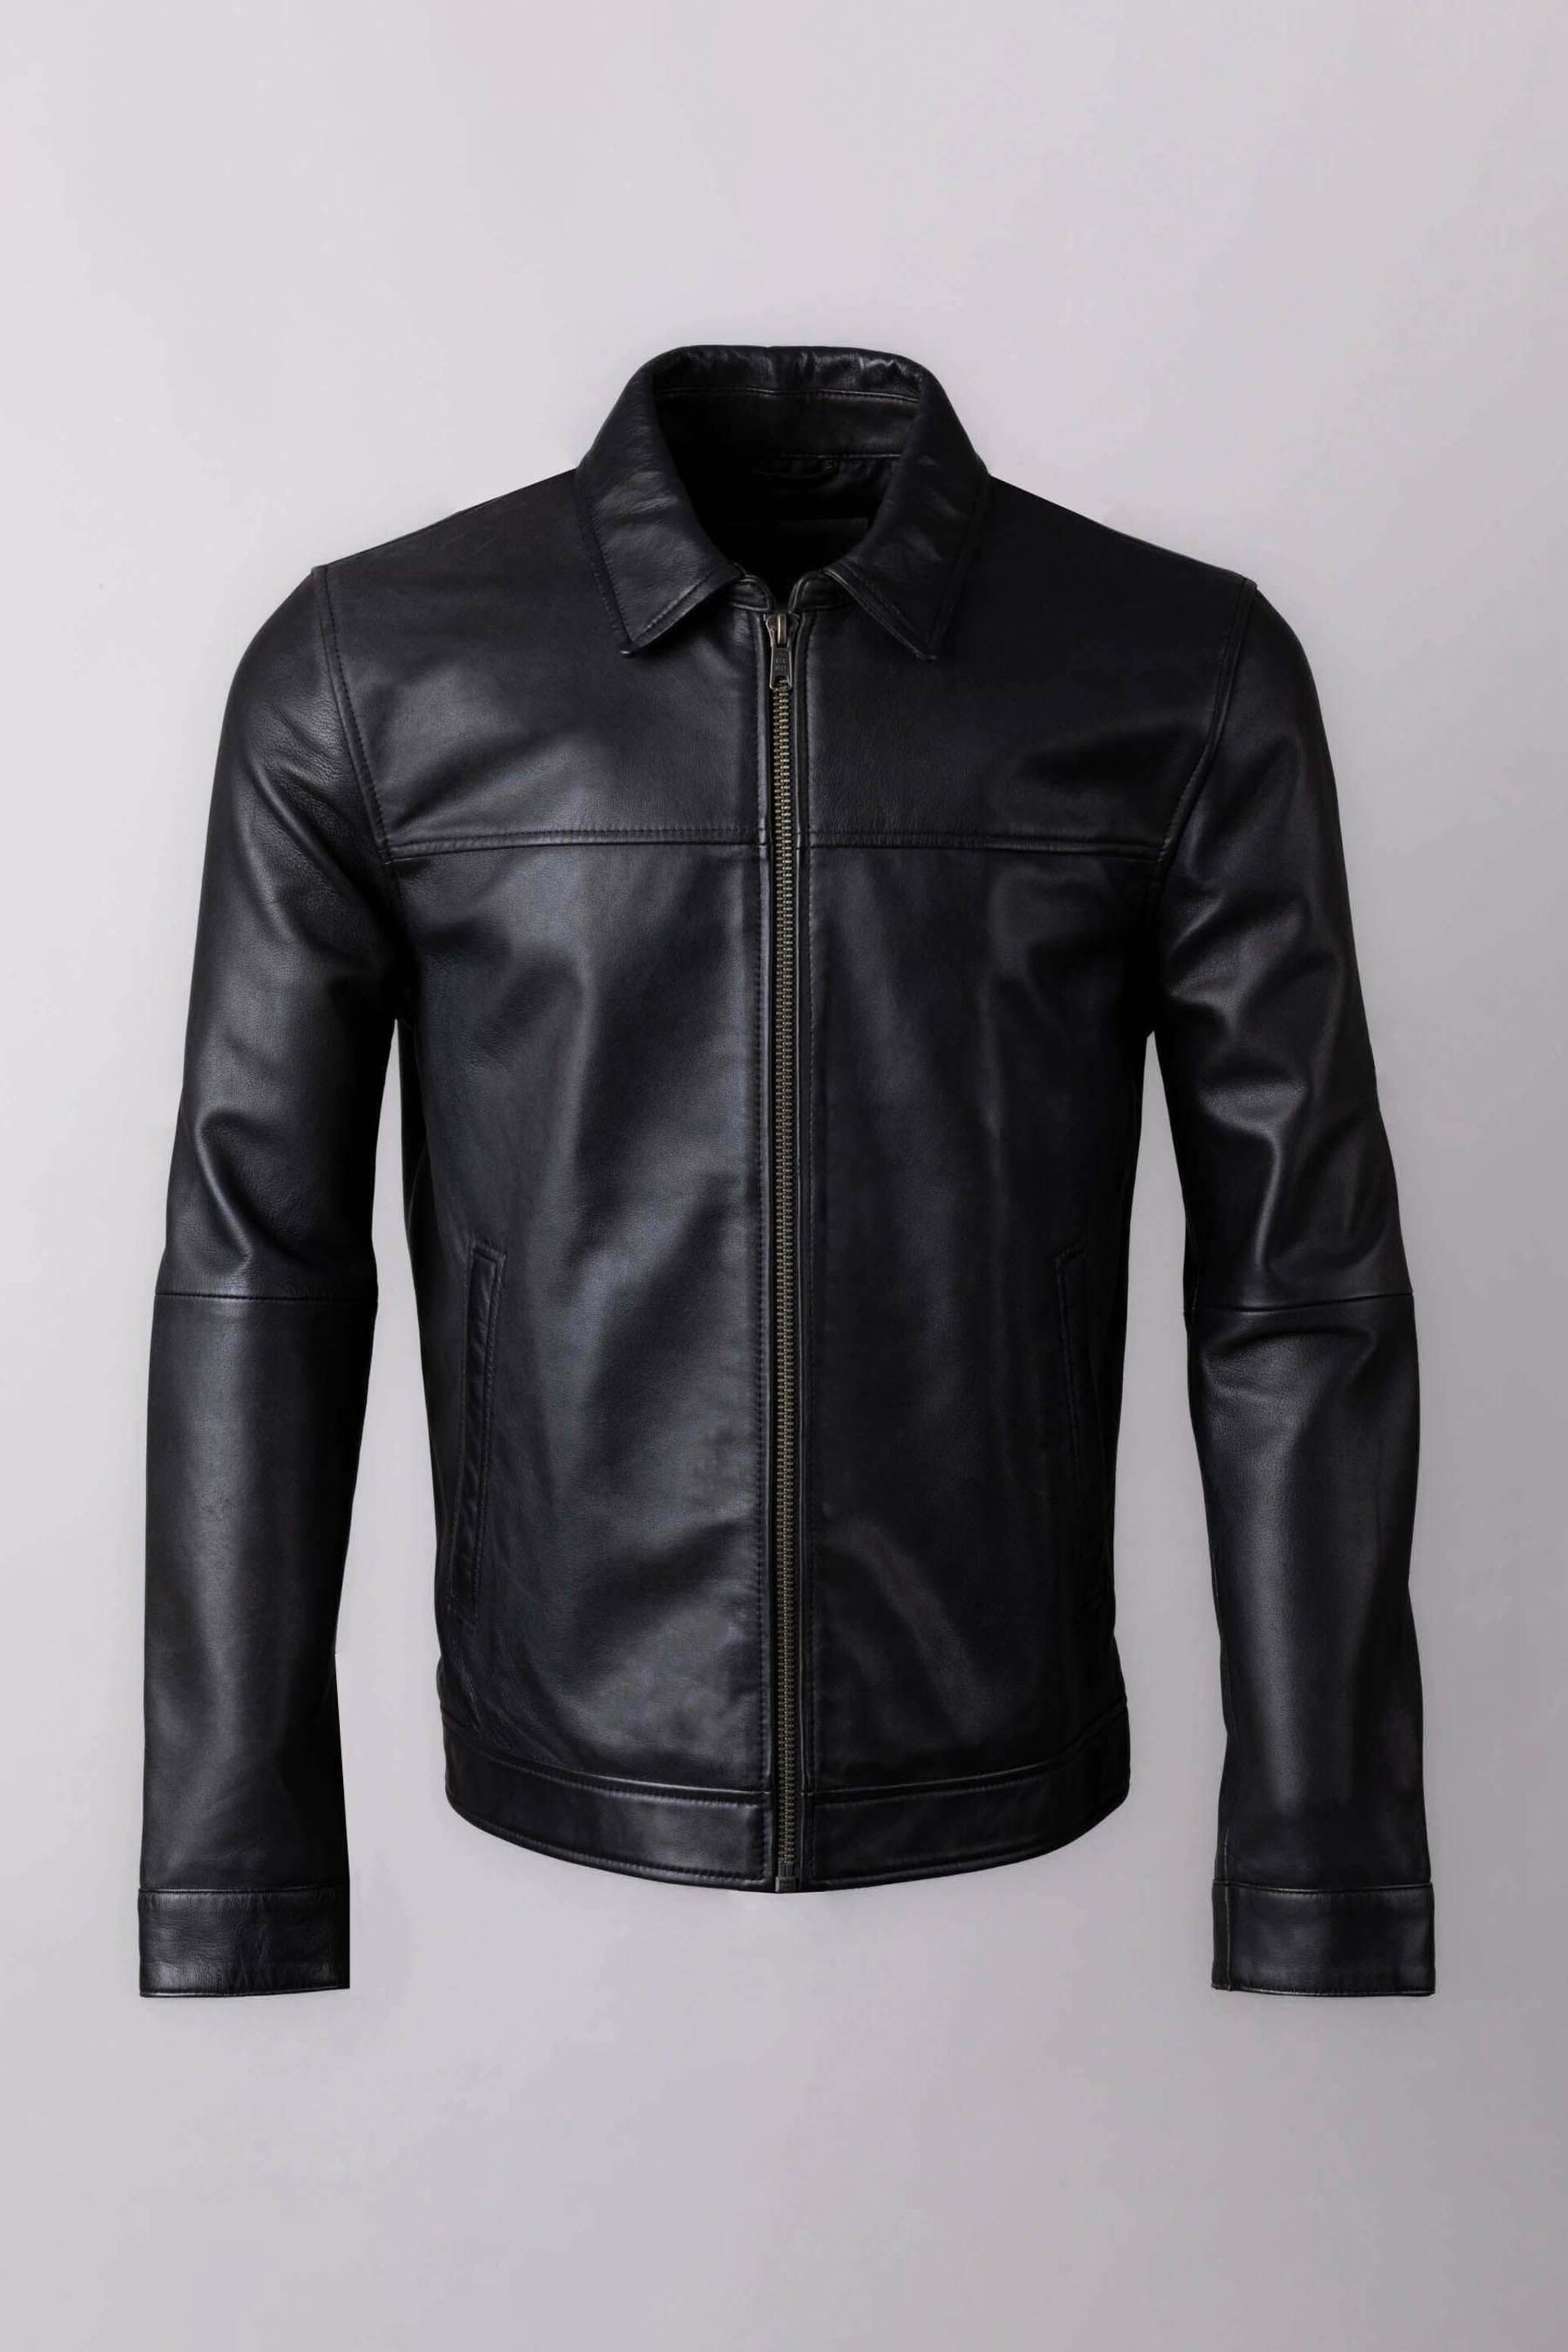 Lakeland Leather Black Renwick Collared Leather Jacket - Image 8 of 12